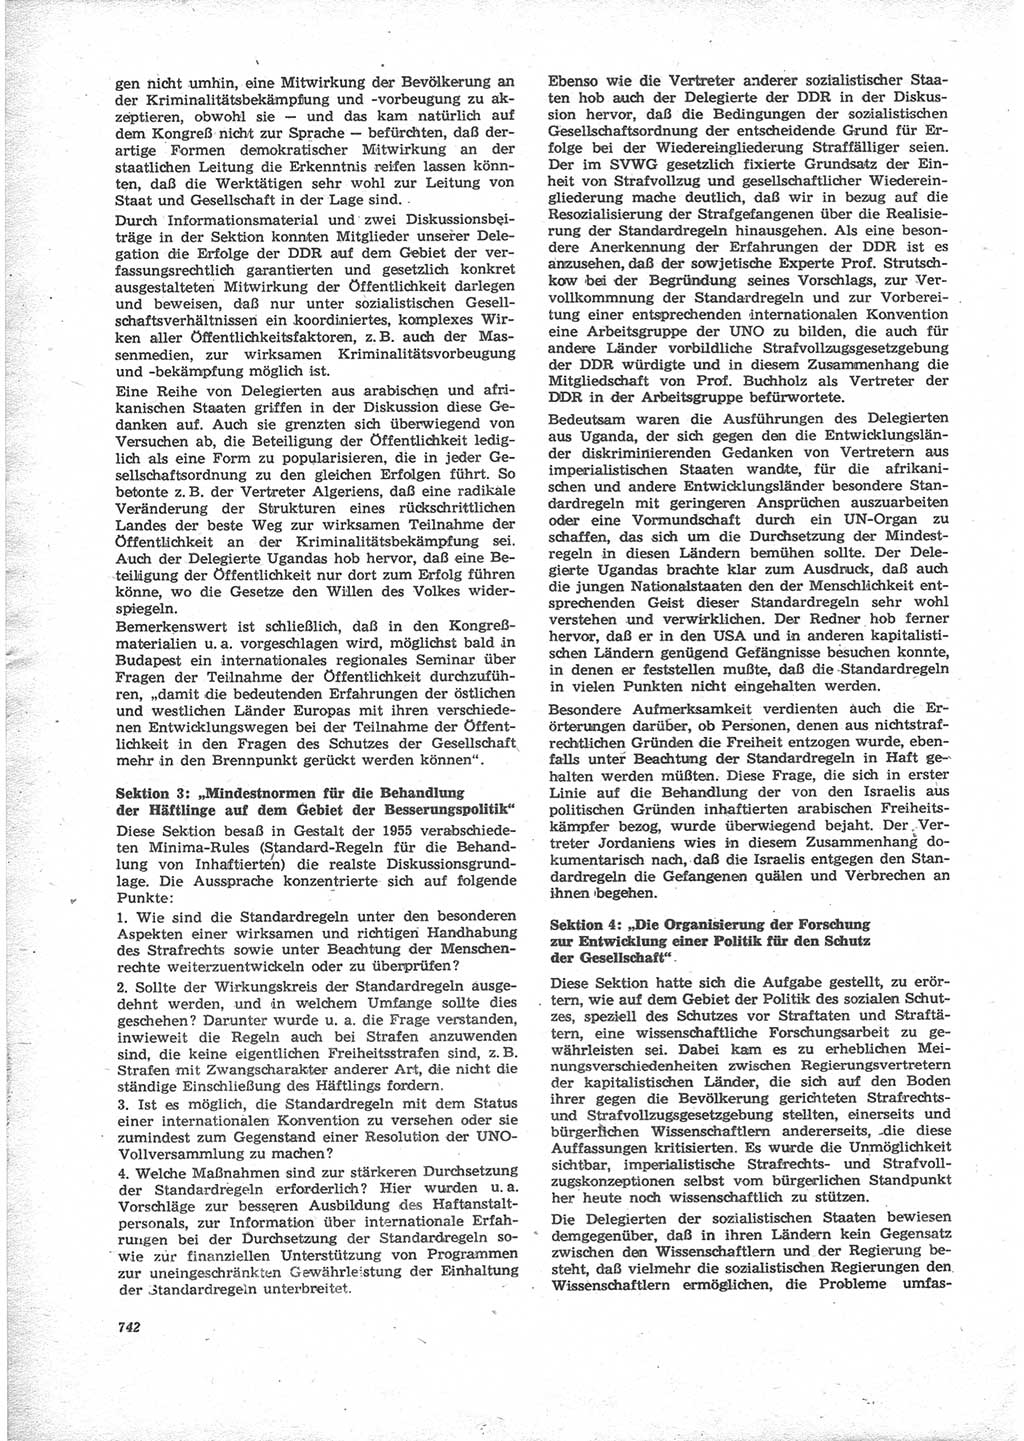 Neue Justiz (NJ), Zeitschrift für Recht und Rechtswissenschaft [Deutsche Demokratische Republik (DDR)], 24. Jahrgang 1970, Seite 742 (NJ DDR 1970, S. 742)